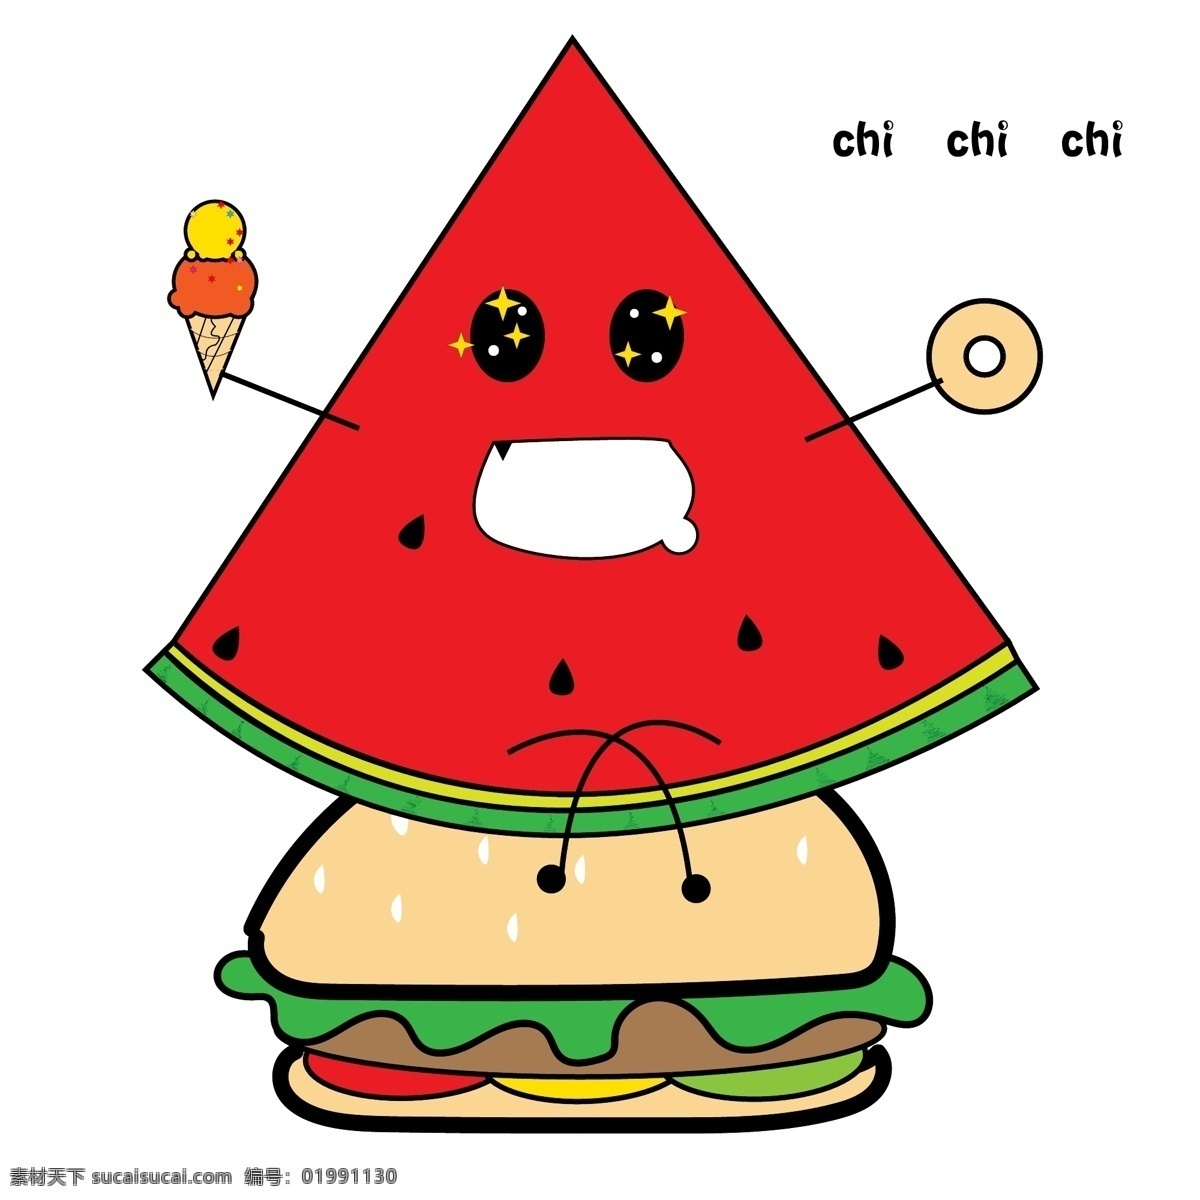 红色 卡通 可爱 风格 西瓜 水果 图标 面包 汉堡包 拟人水果 扁平化图标 食物图标 卡通水果手账 可爱水果贴纸